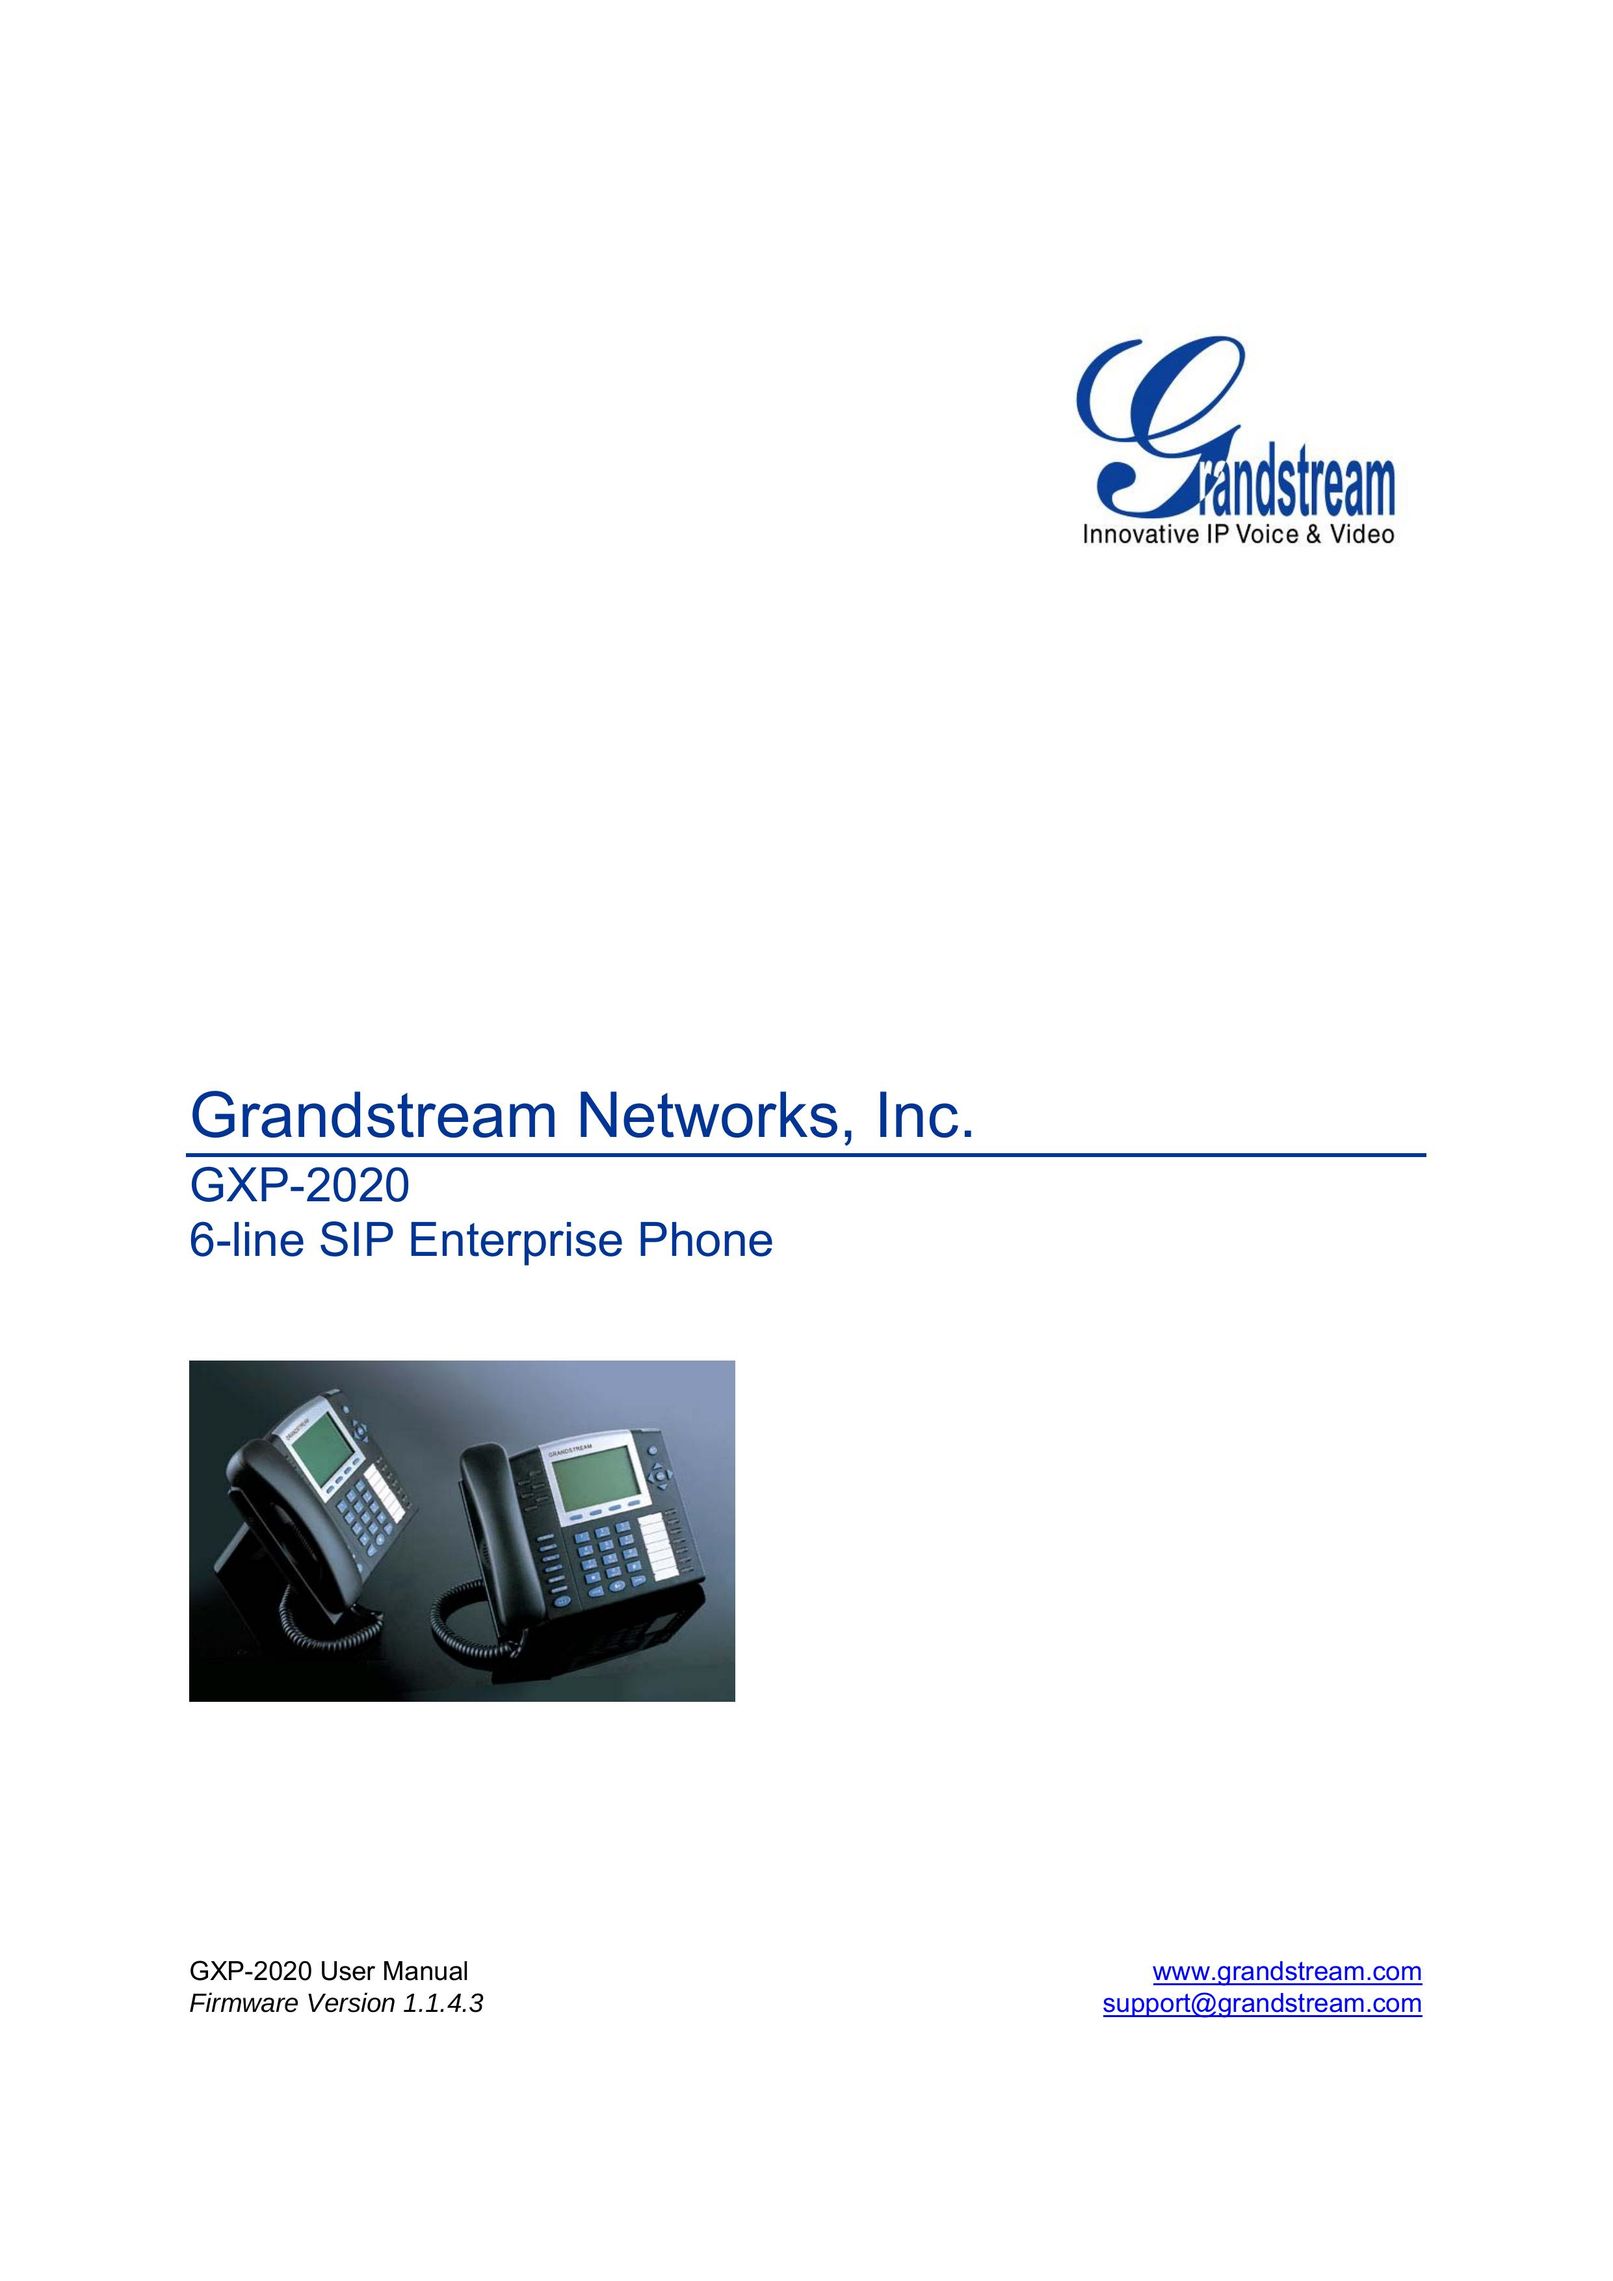 Grandstream Networks GXP-2020 IP Phone User Manual